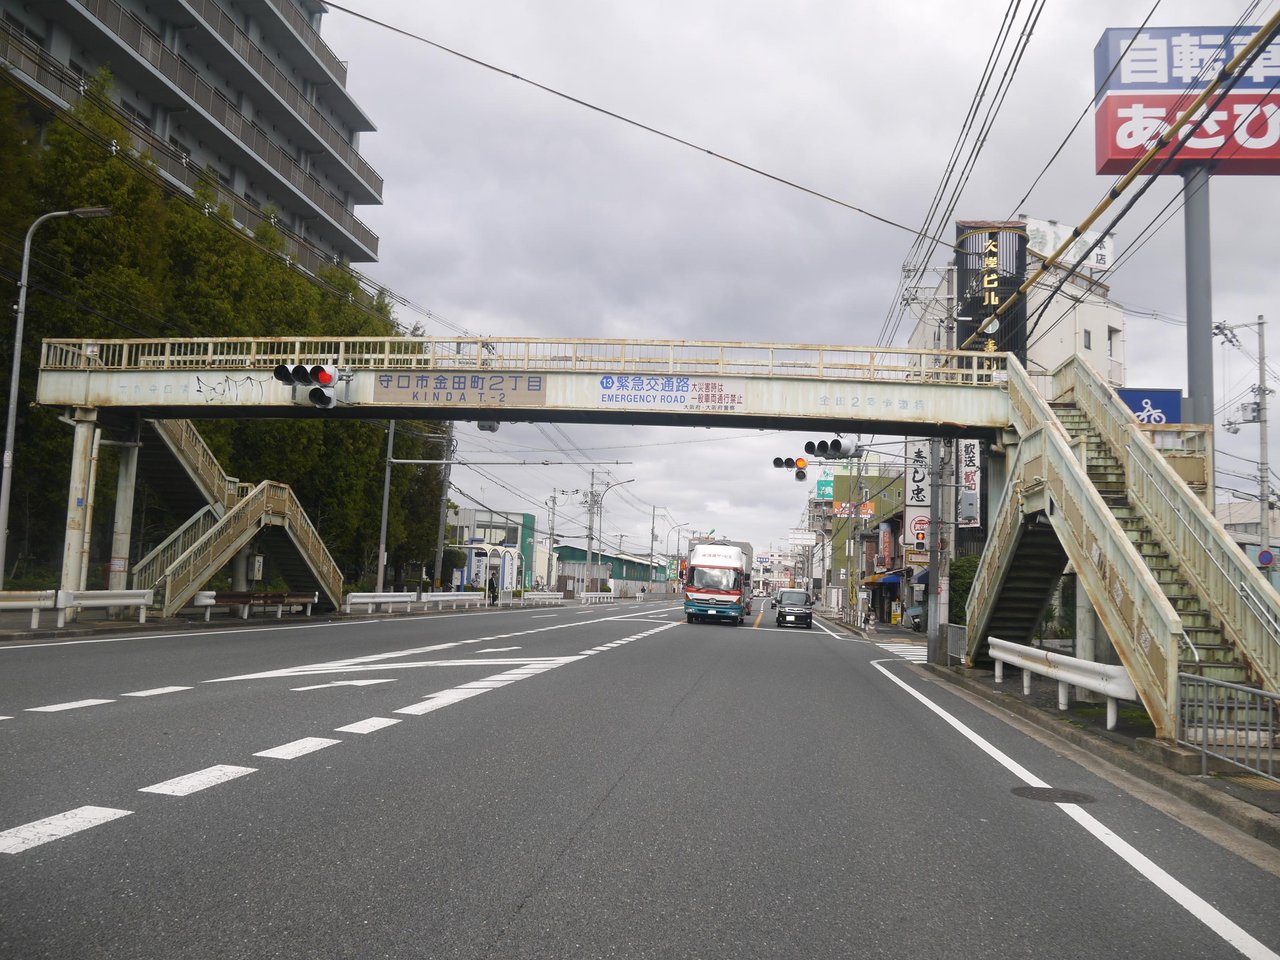 金田2号歩道橋が撤去されてなくなってる！府道13号線の光景がスッキリ！